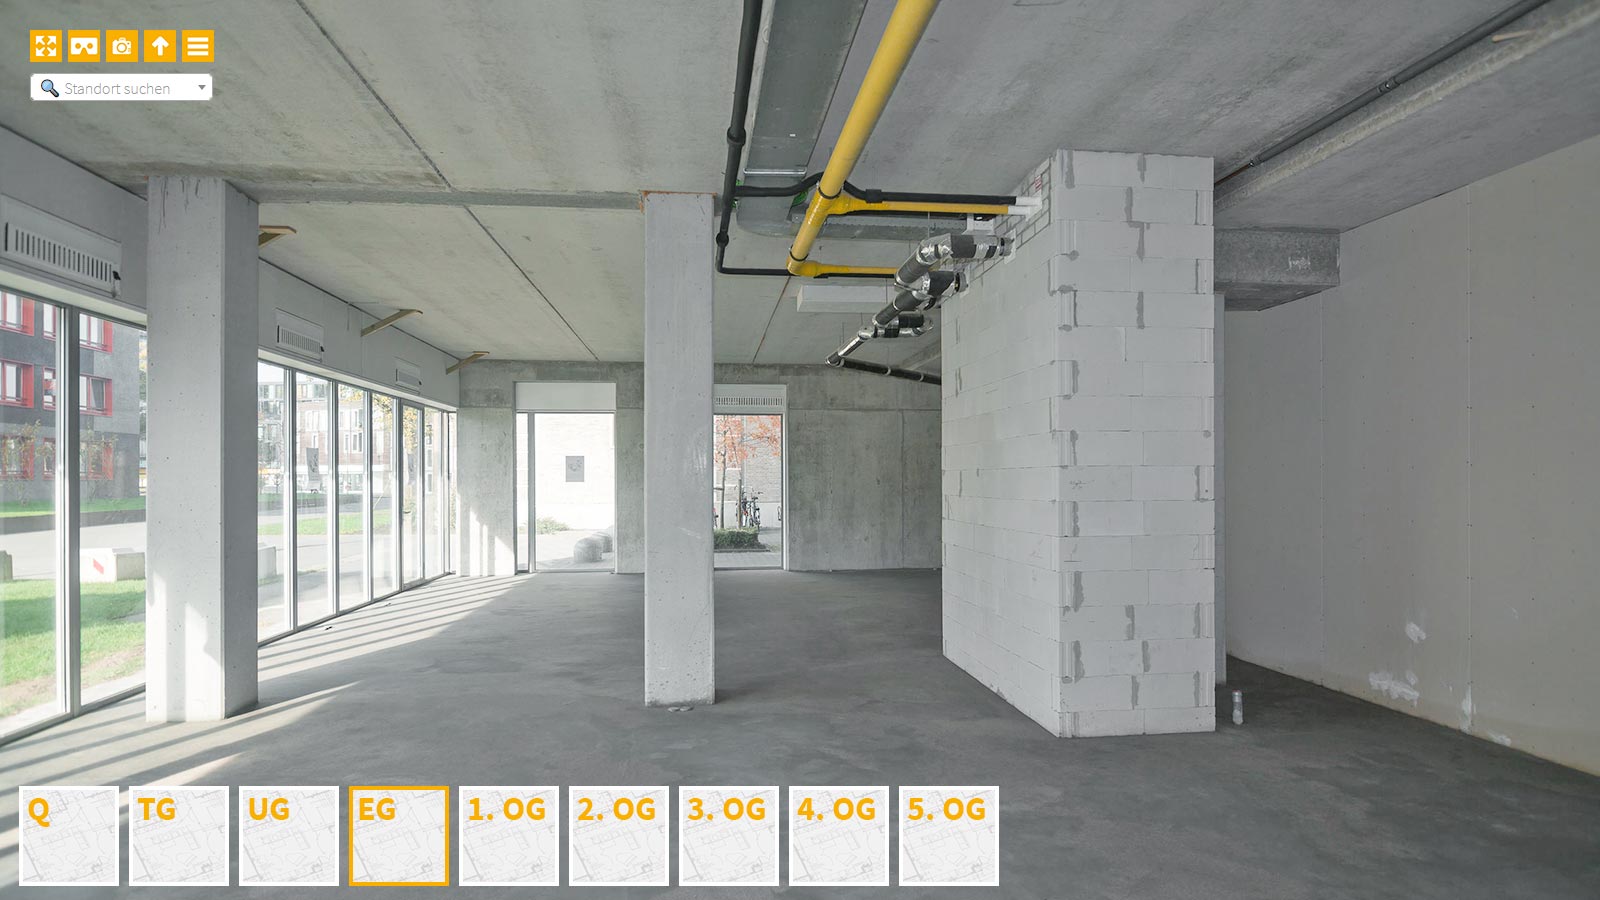 Baudokumentation 360 Grad bei gestörten Projekten in 


	


	


	


	


	


	


	


	


	


	Aachen









, Bilddokumentation als virtueller Rundgang